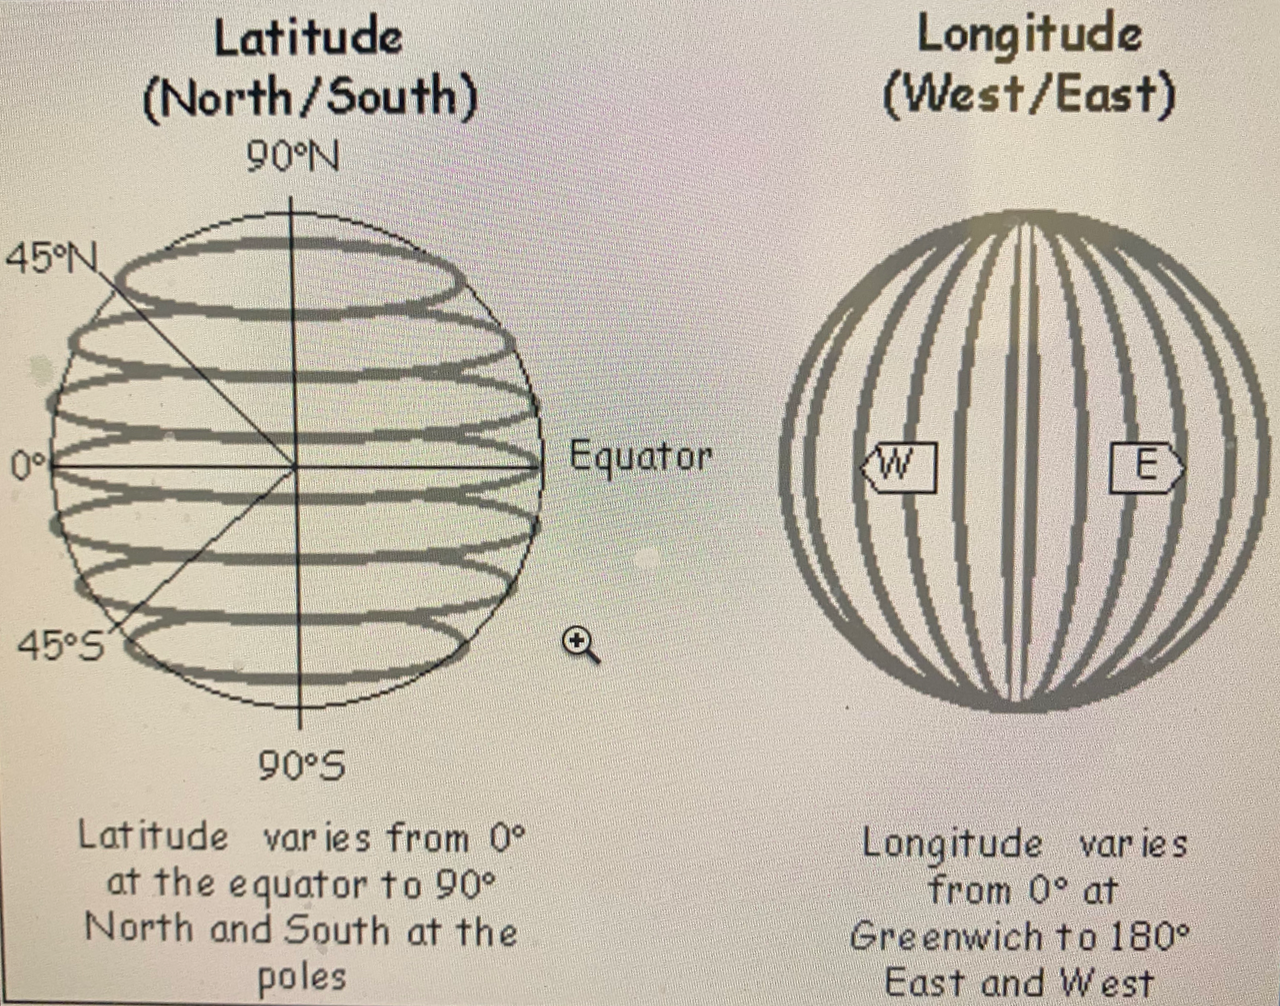 Latitude & Longitude